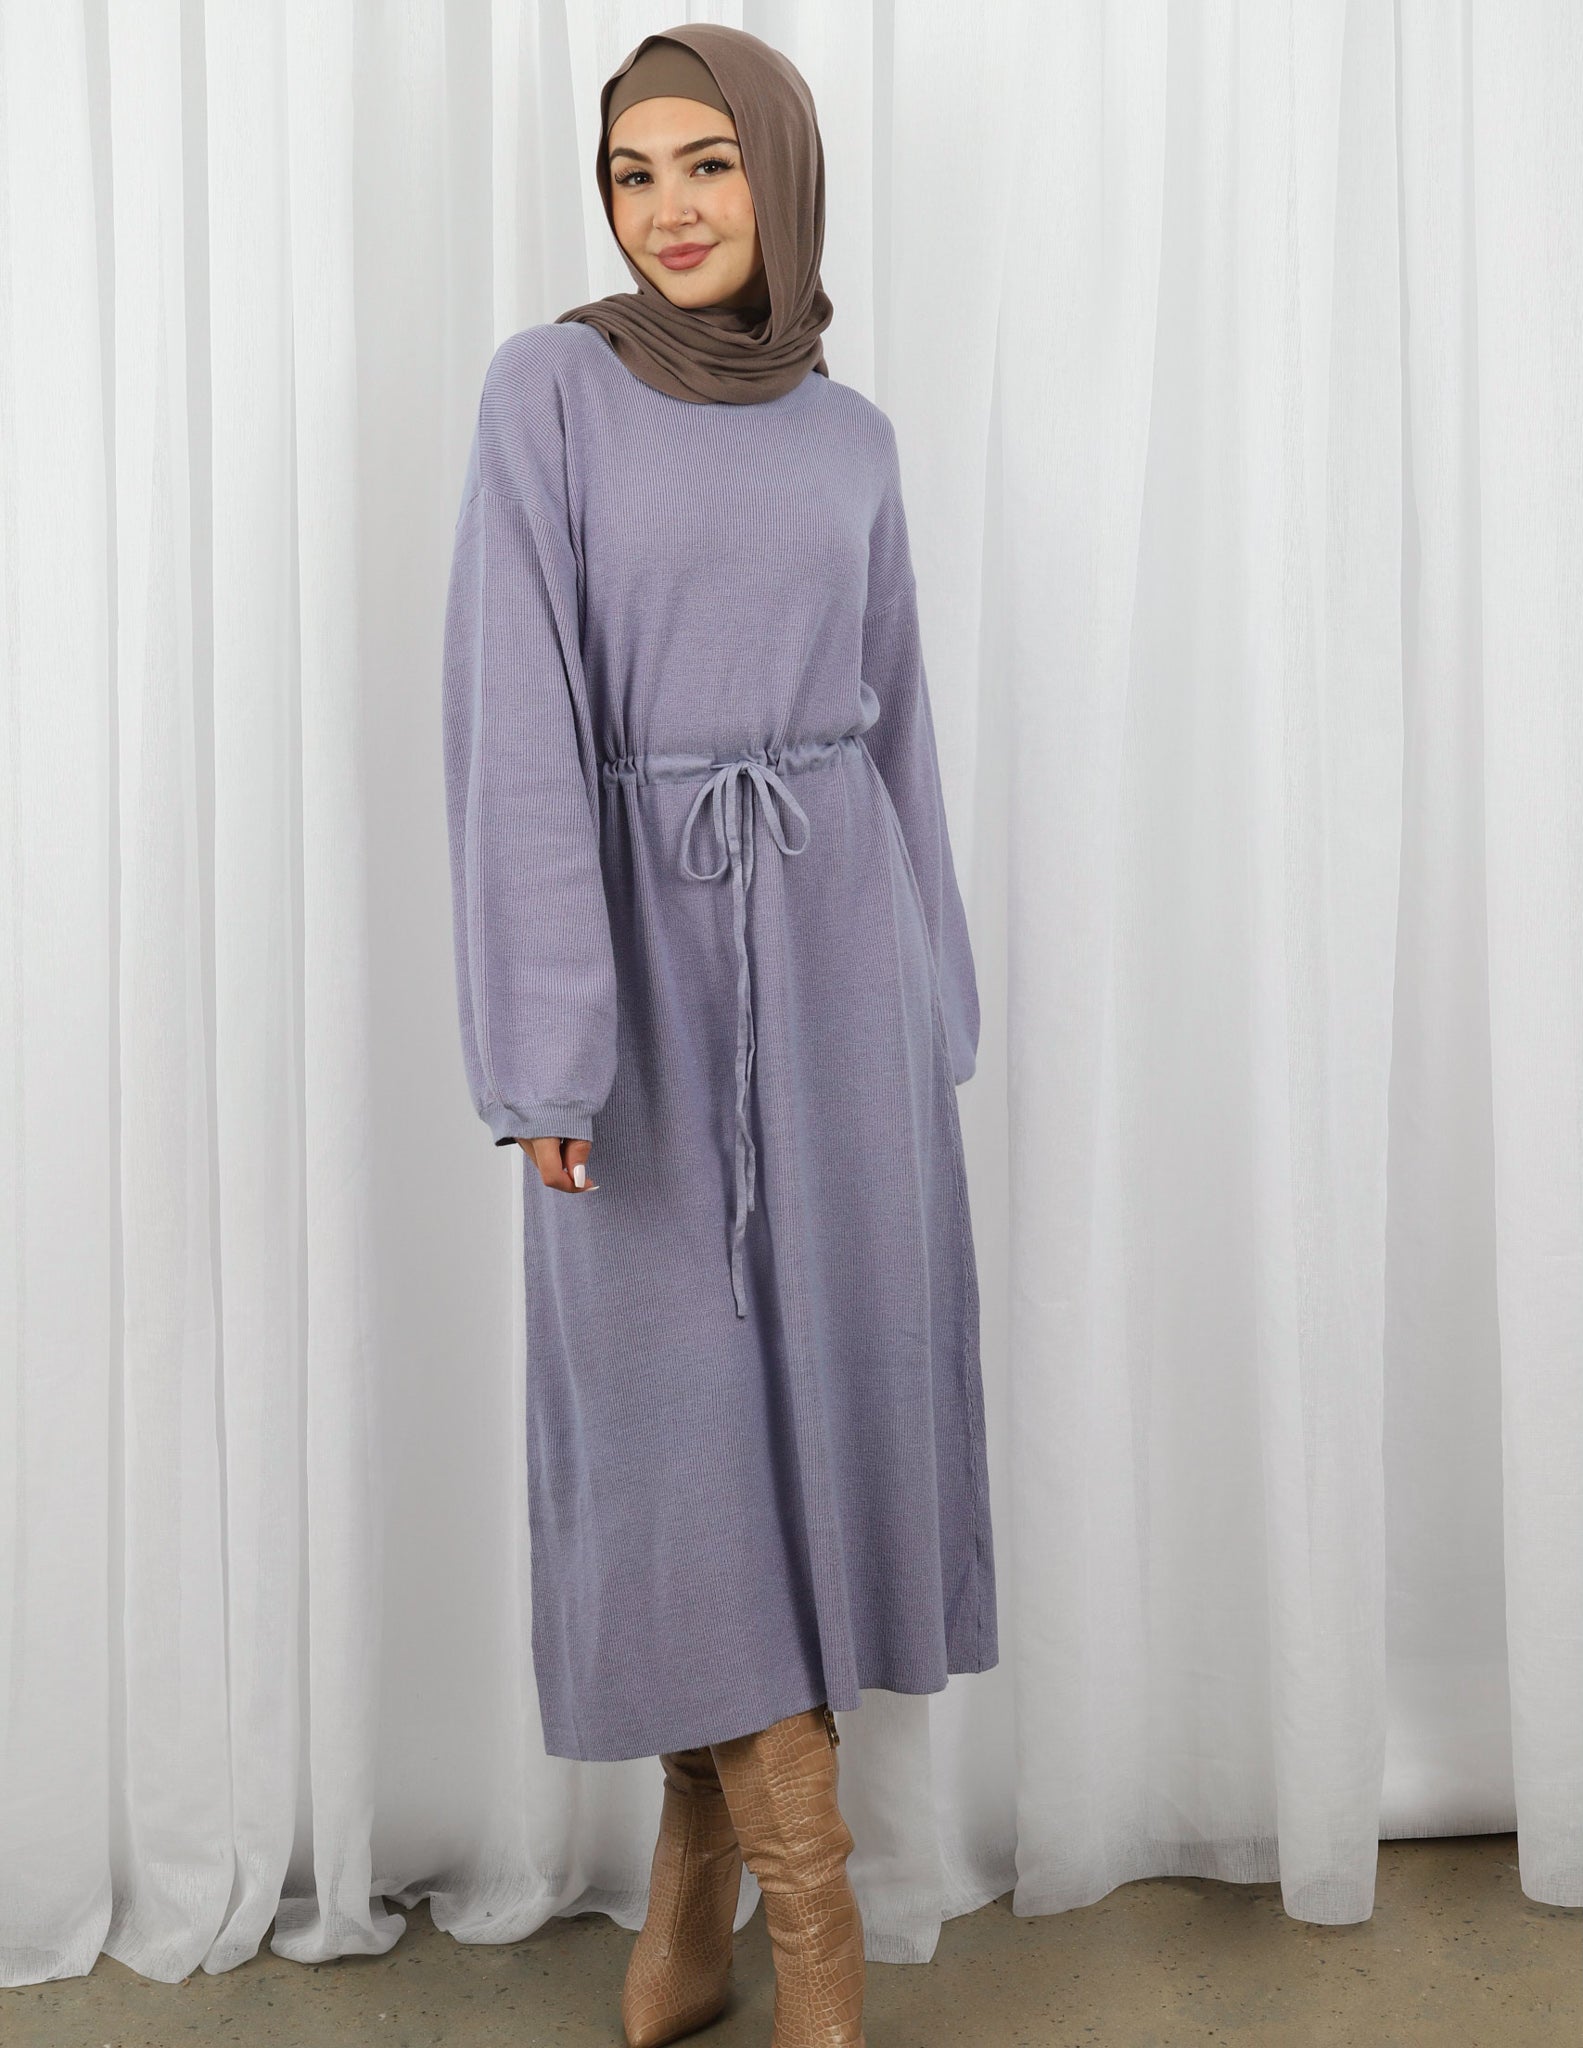 R01220097-1-LAV-dress-abaya